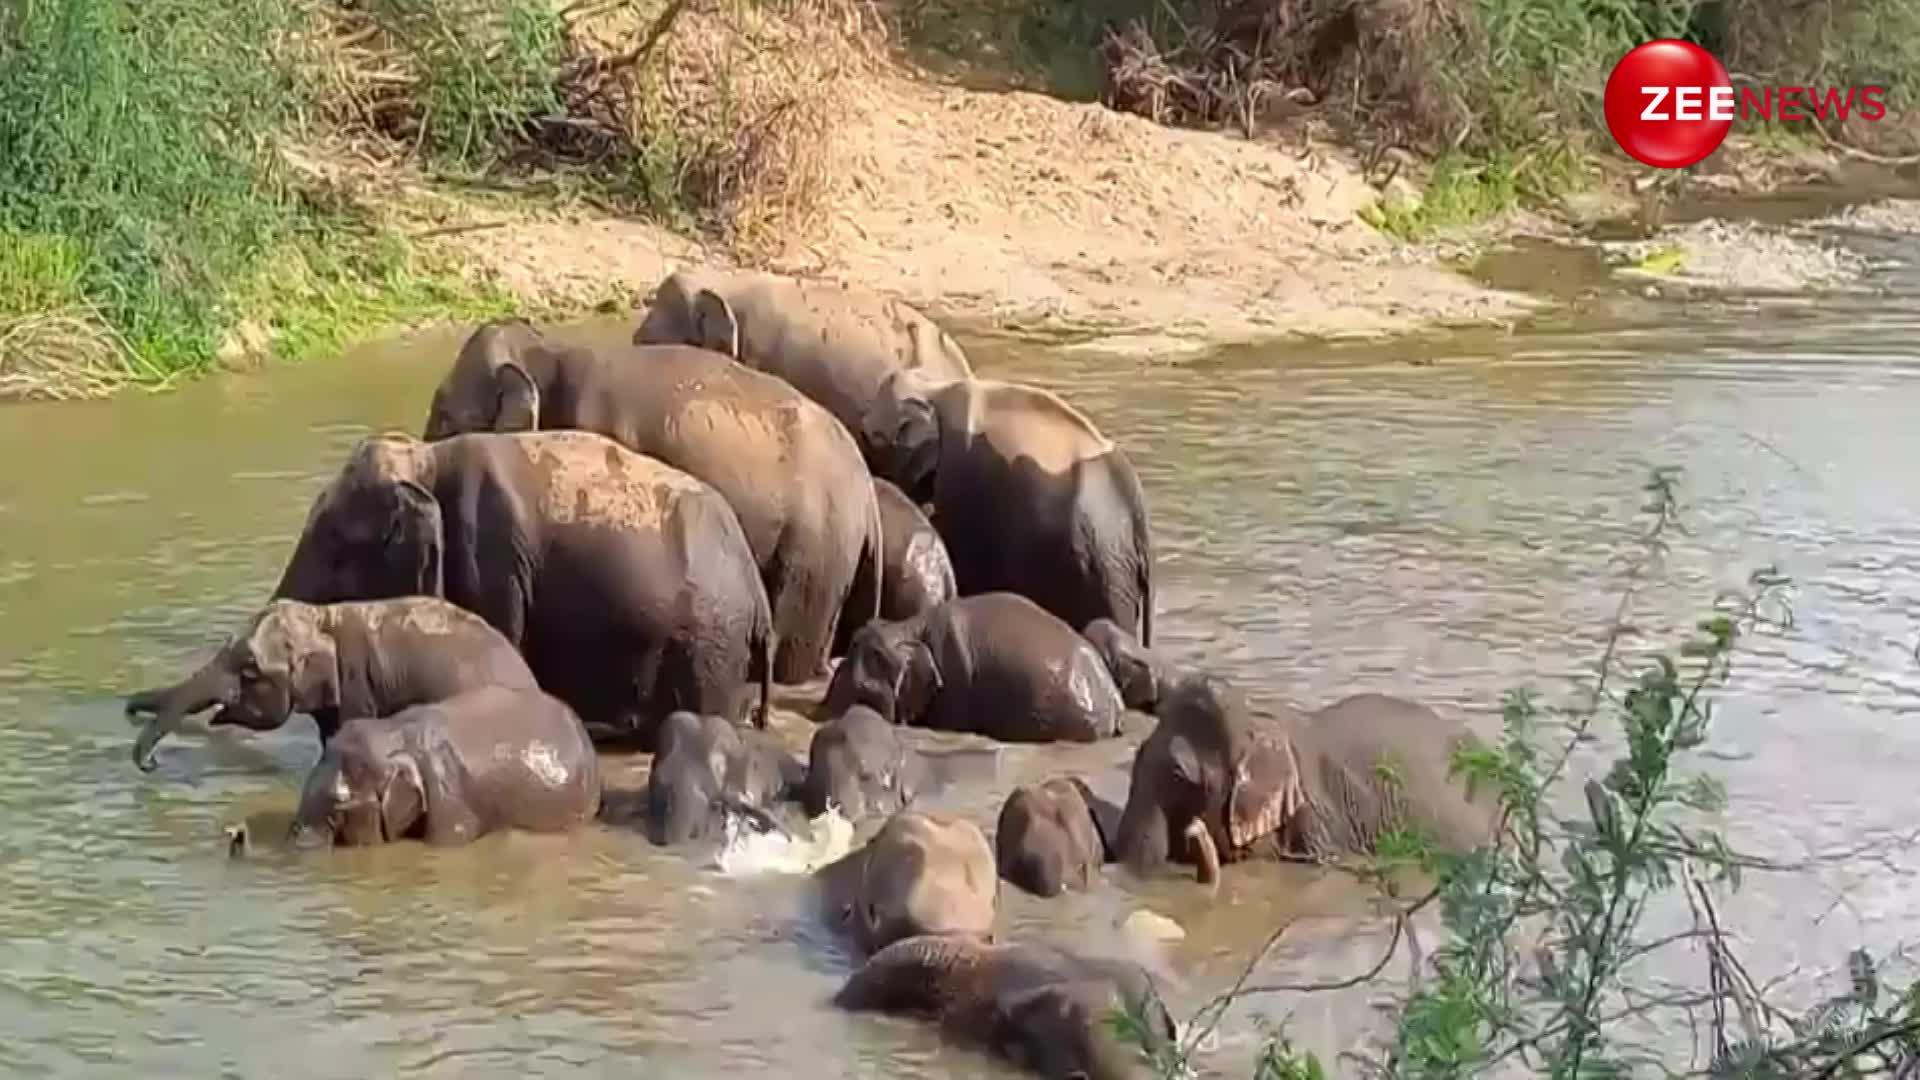 नदी में जाकर हाथियों के झुंड ने किया कुछ ऐसा, देख डर गए लोग; वीडियो ने पूरे इलाके में मचाई सनसनी